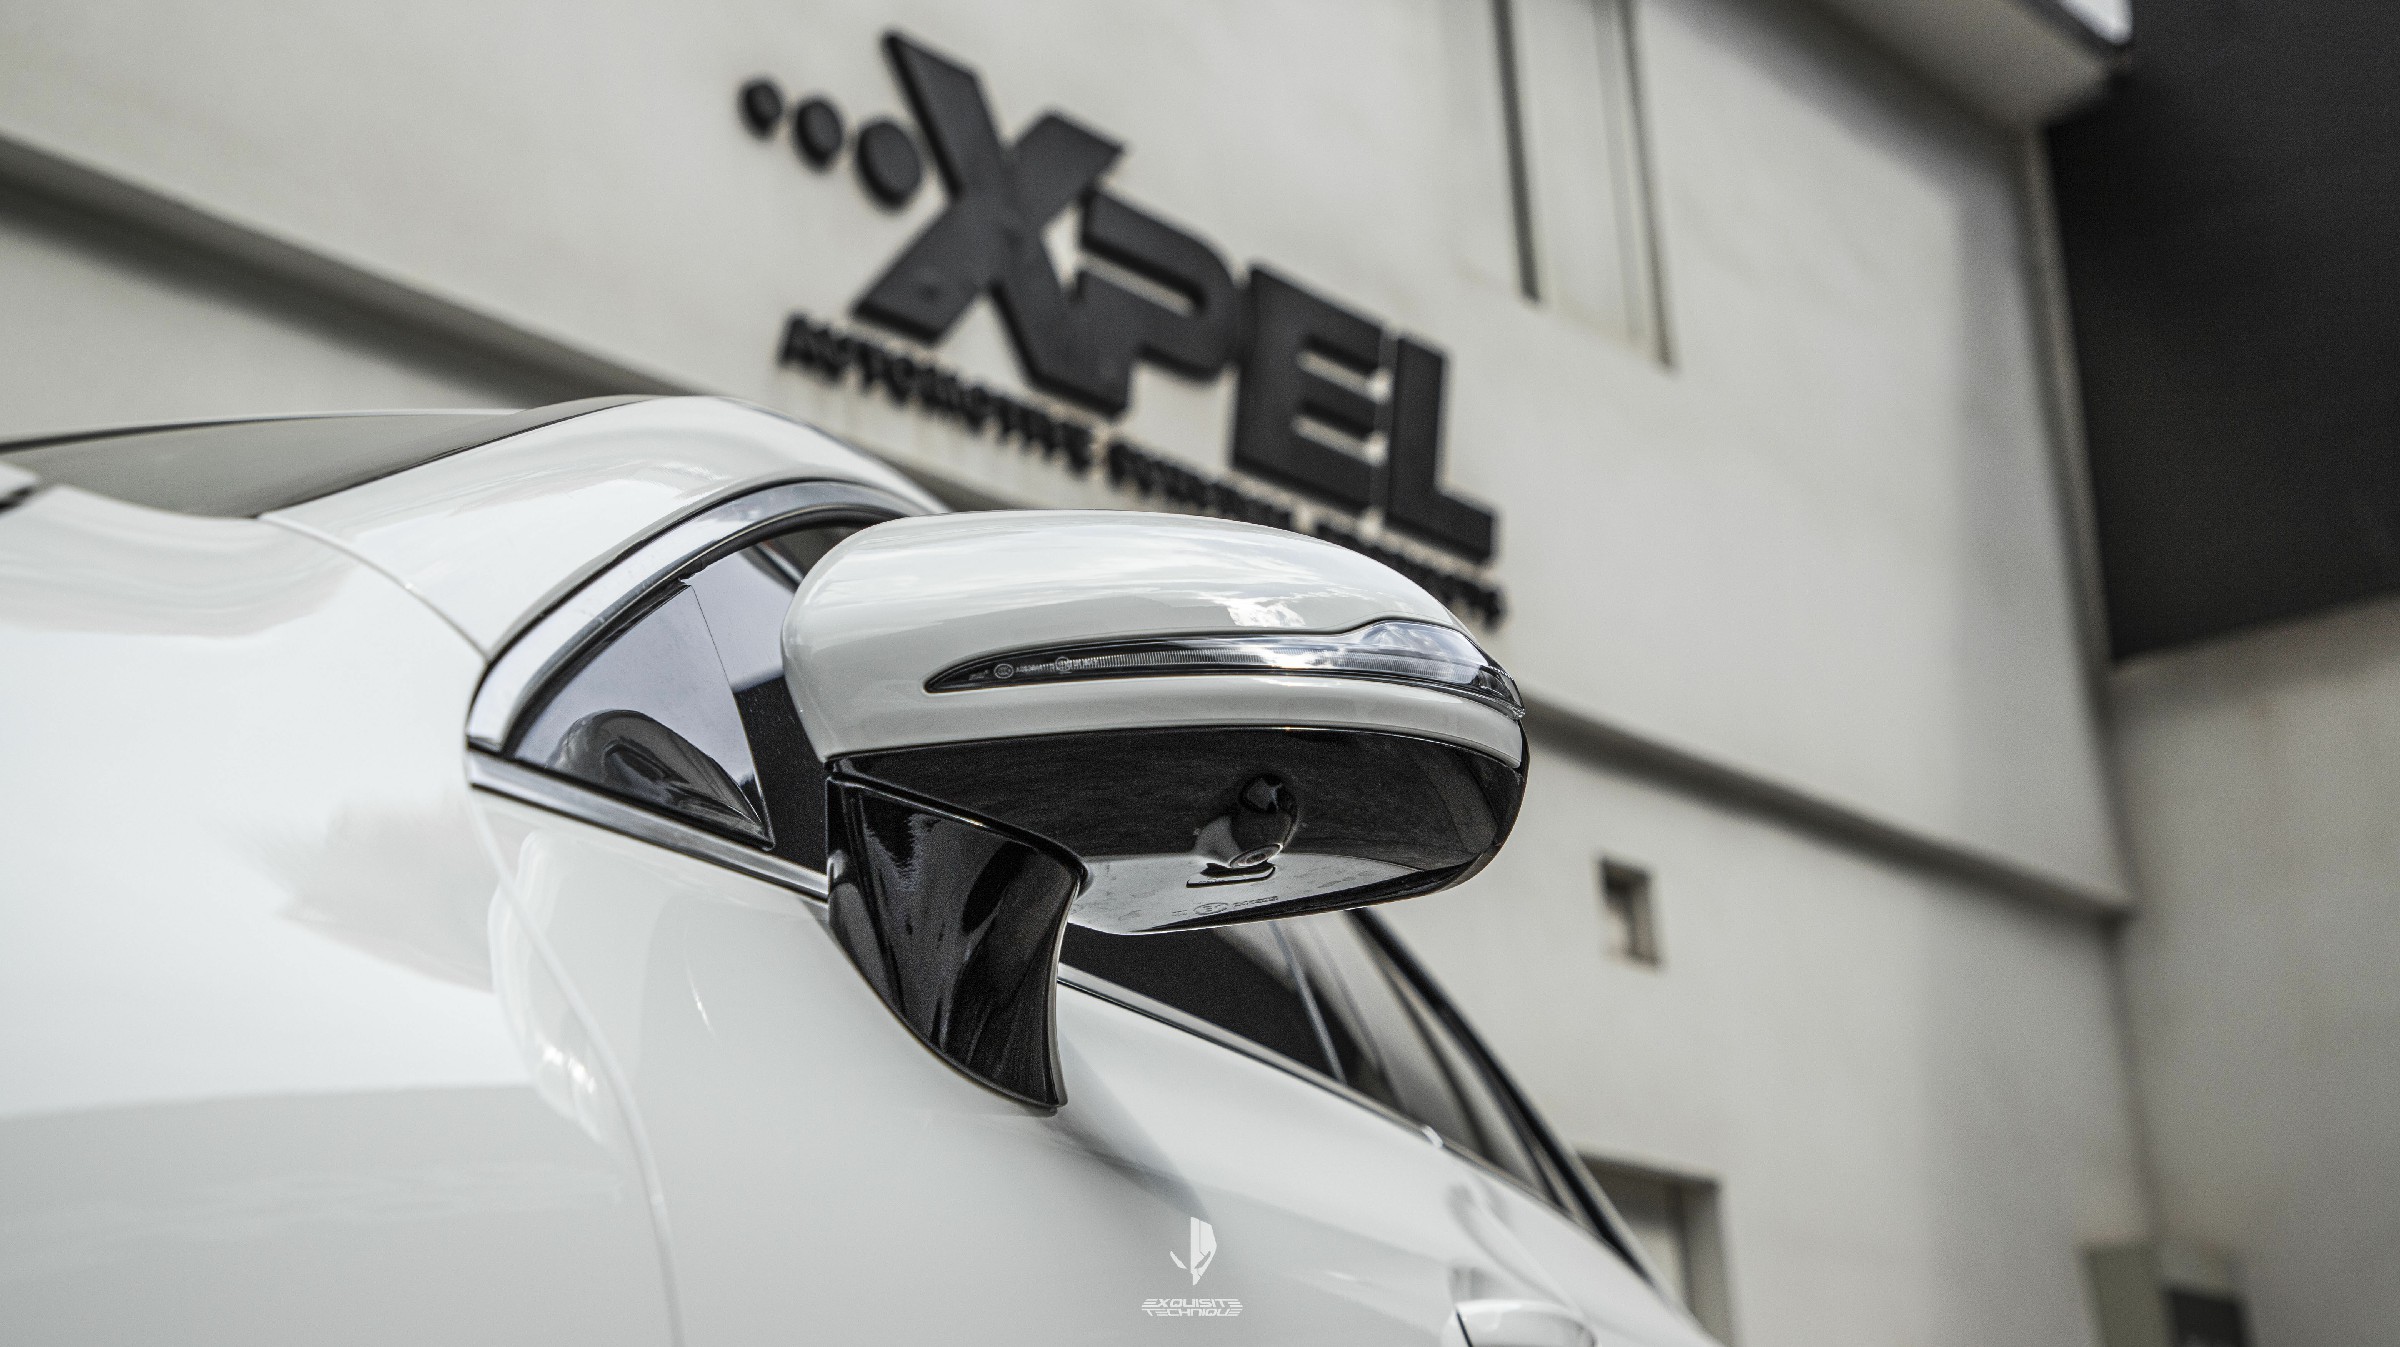 2021.8.18 奔驰CLS300 XPEL LUX MAX